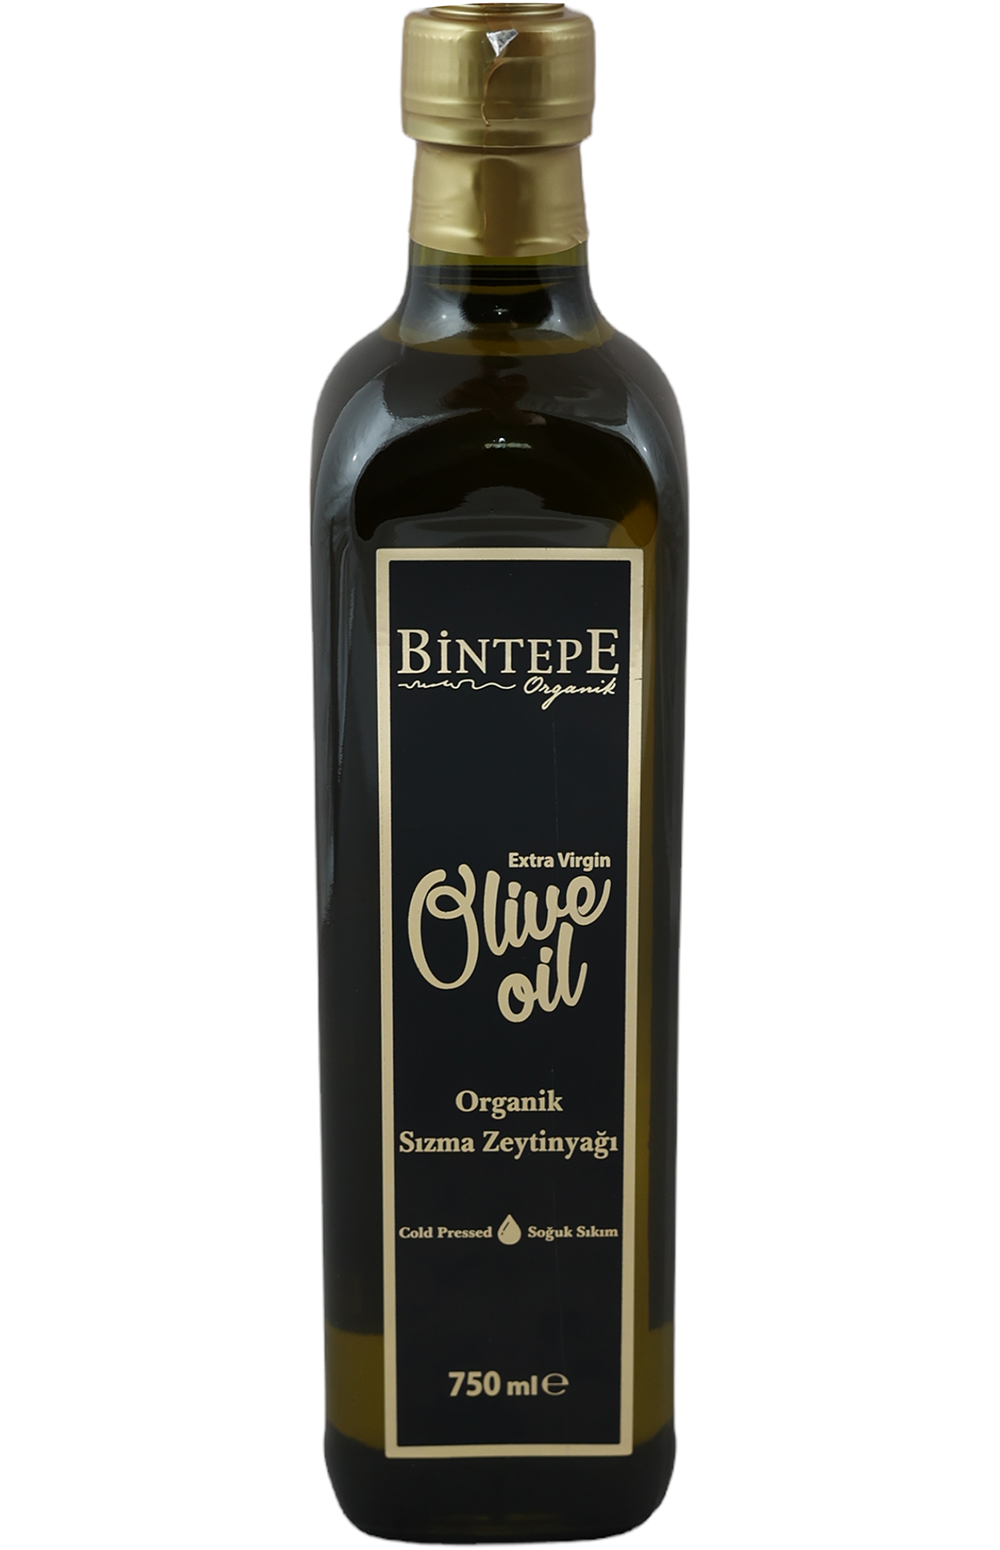 Bintepe Organic